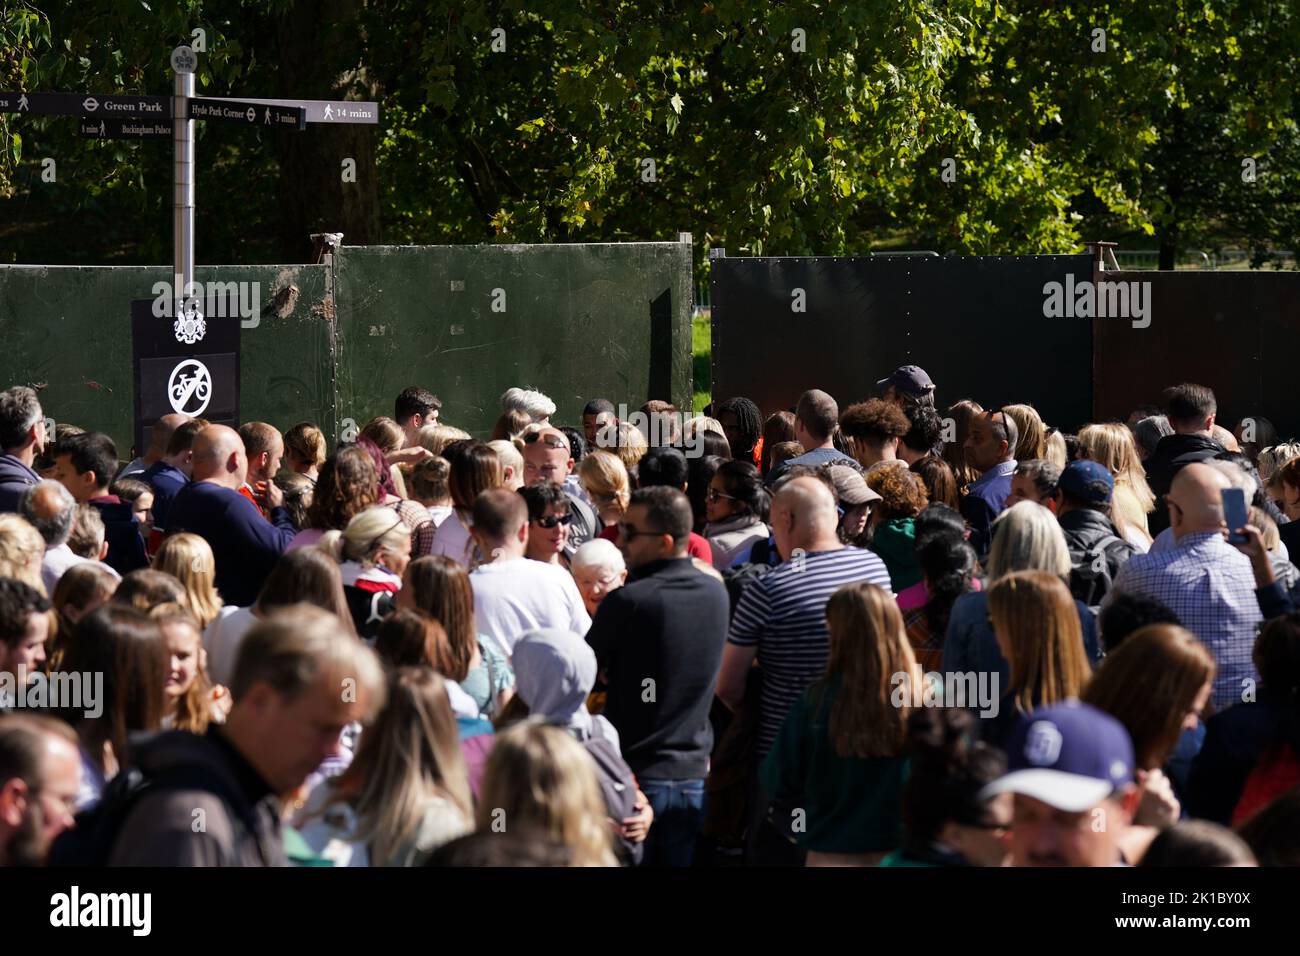 Miembros de la cola pública para obtener acceso a Green Park en Londres, mientras esperan para depositar flores y homenajes a la reina Isabel II antes de su funeral el lunes. Fecha de la foto: Sábado 17 de septiembre de 2022. Foto de stock